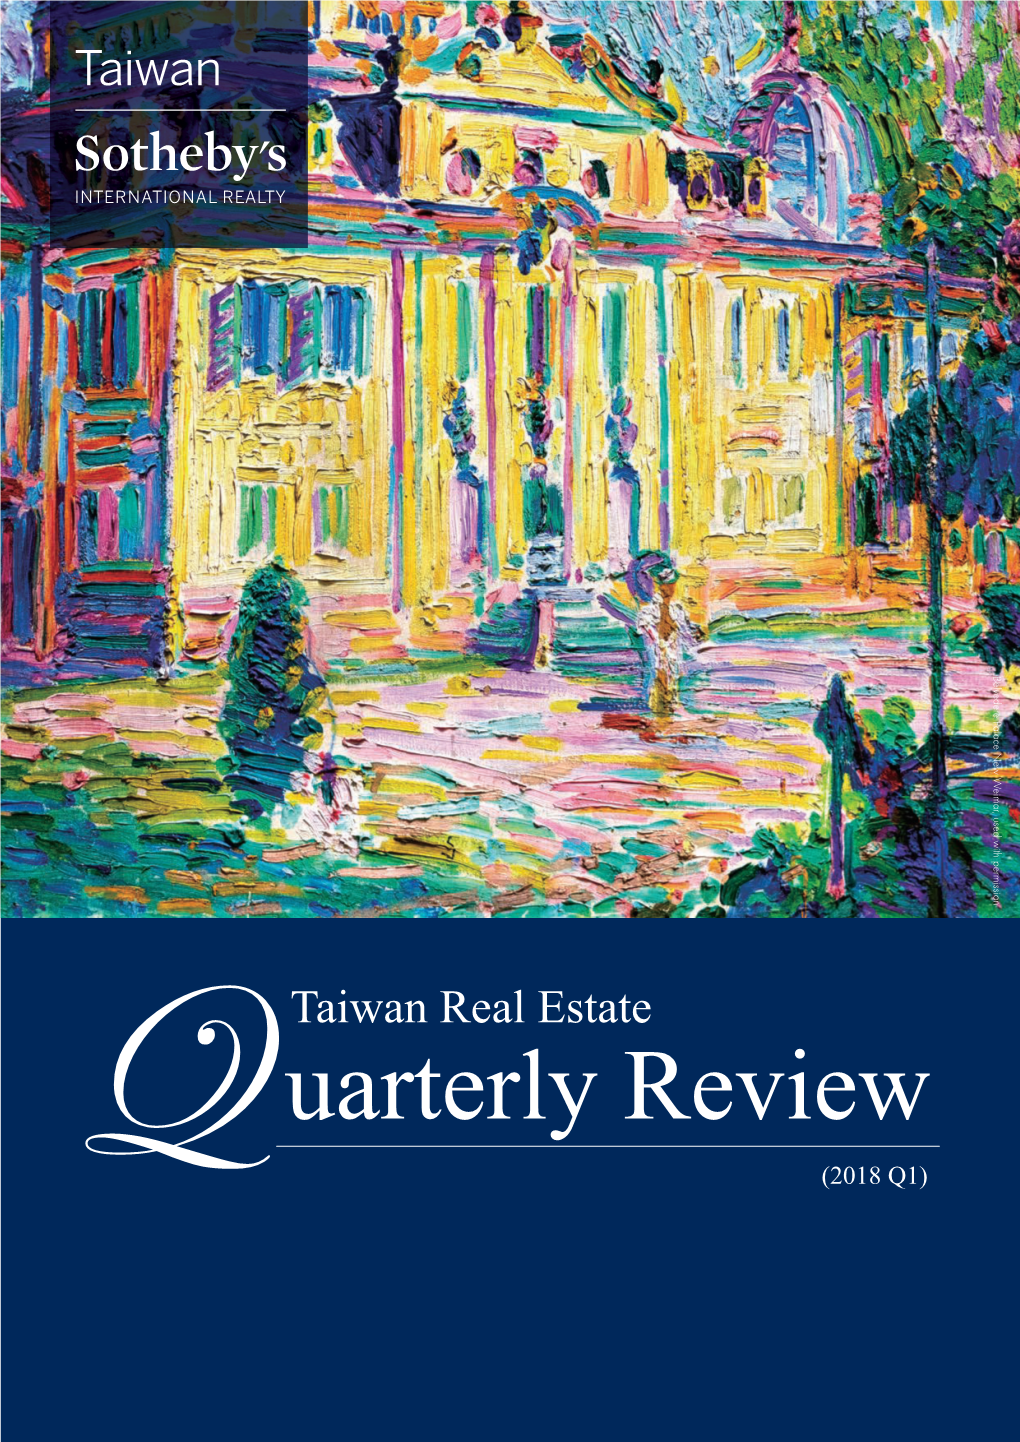 Taiwan Real Estate Uarterly Review Q (2018 Q1) 台灣蘇富比國際房地產 研究報告 (Q1 2018)